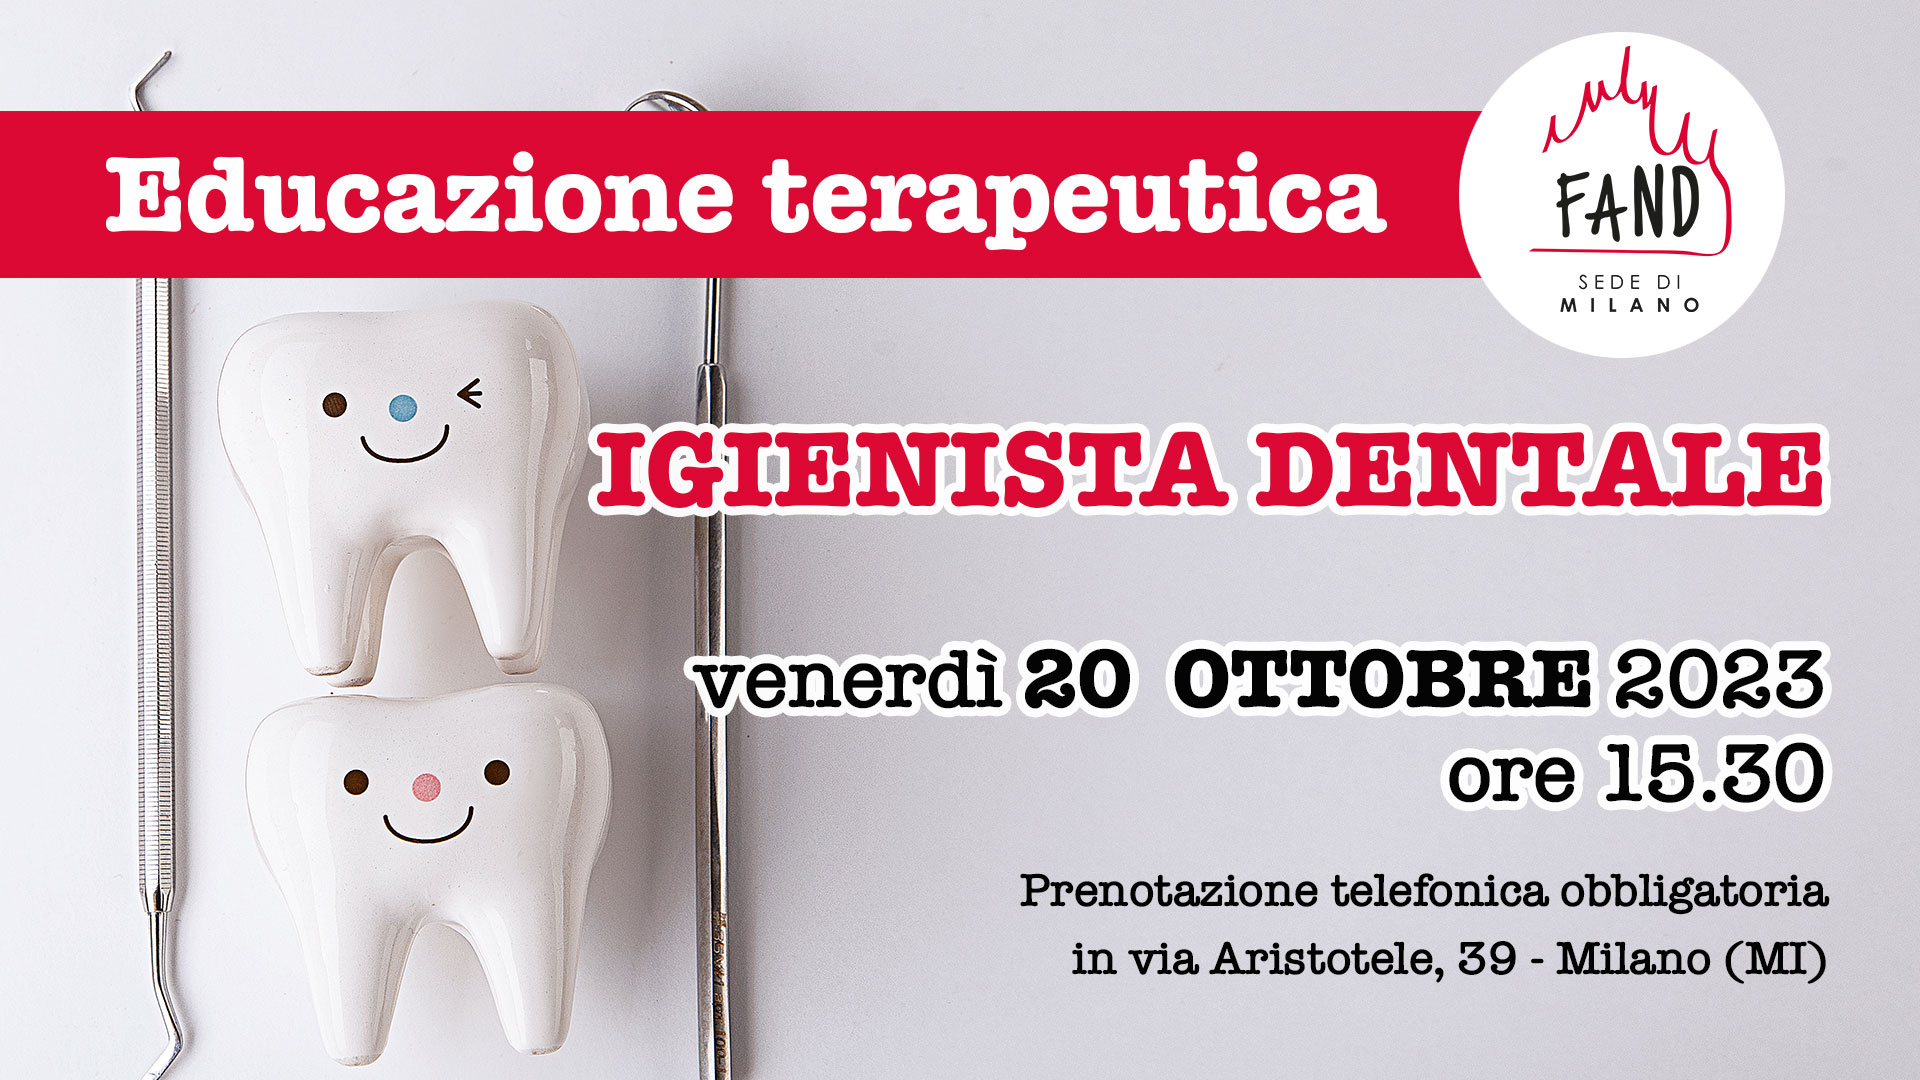 venerdì 20 ottobre - Incontro gratuito educazione terapeutica con l'igenista dentale